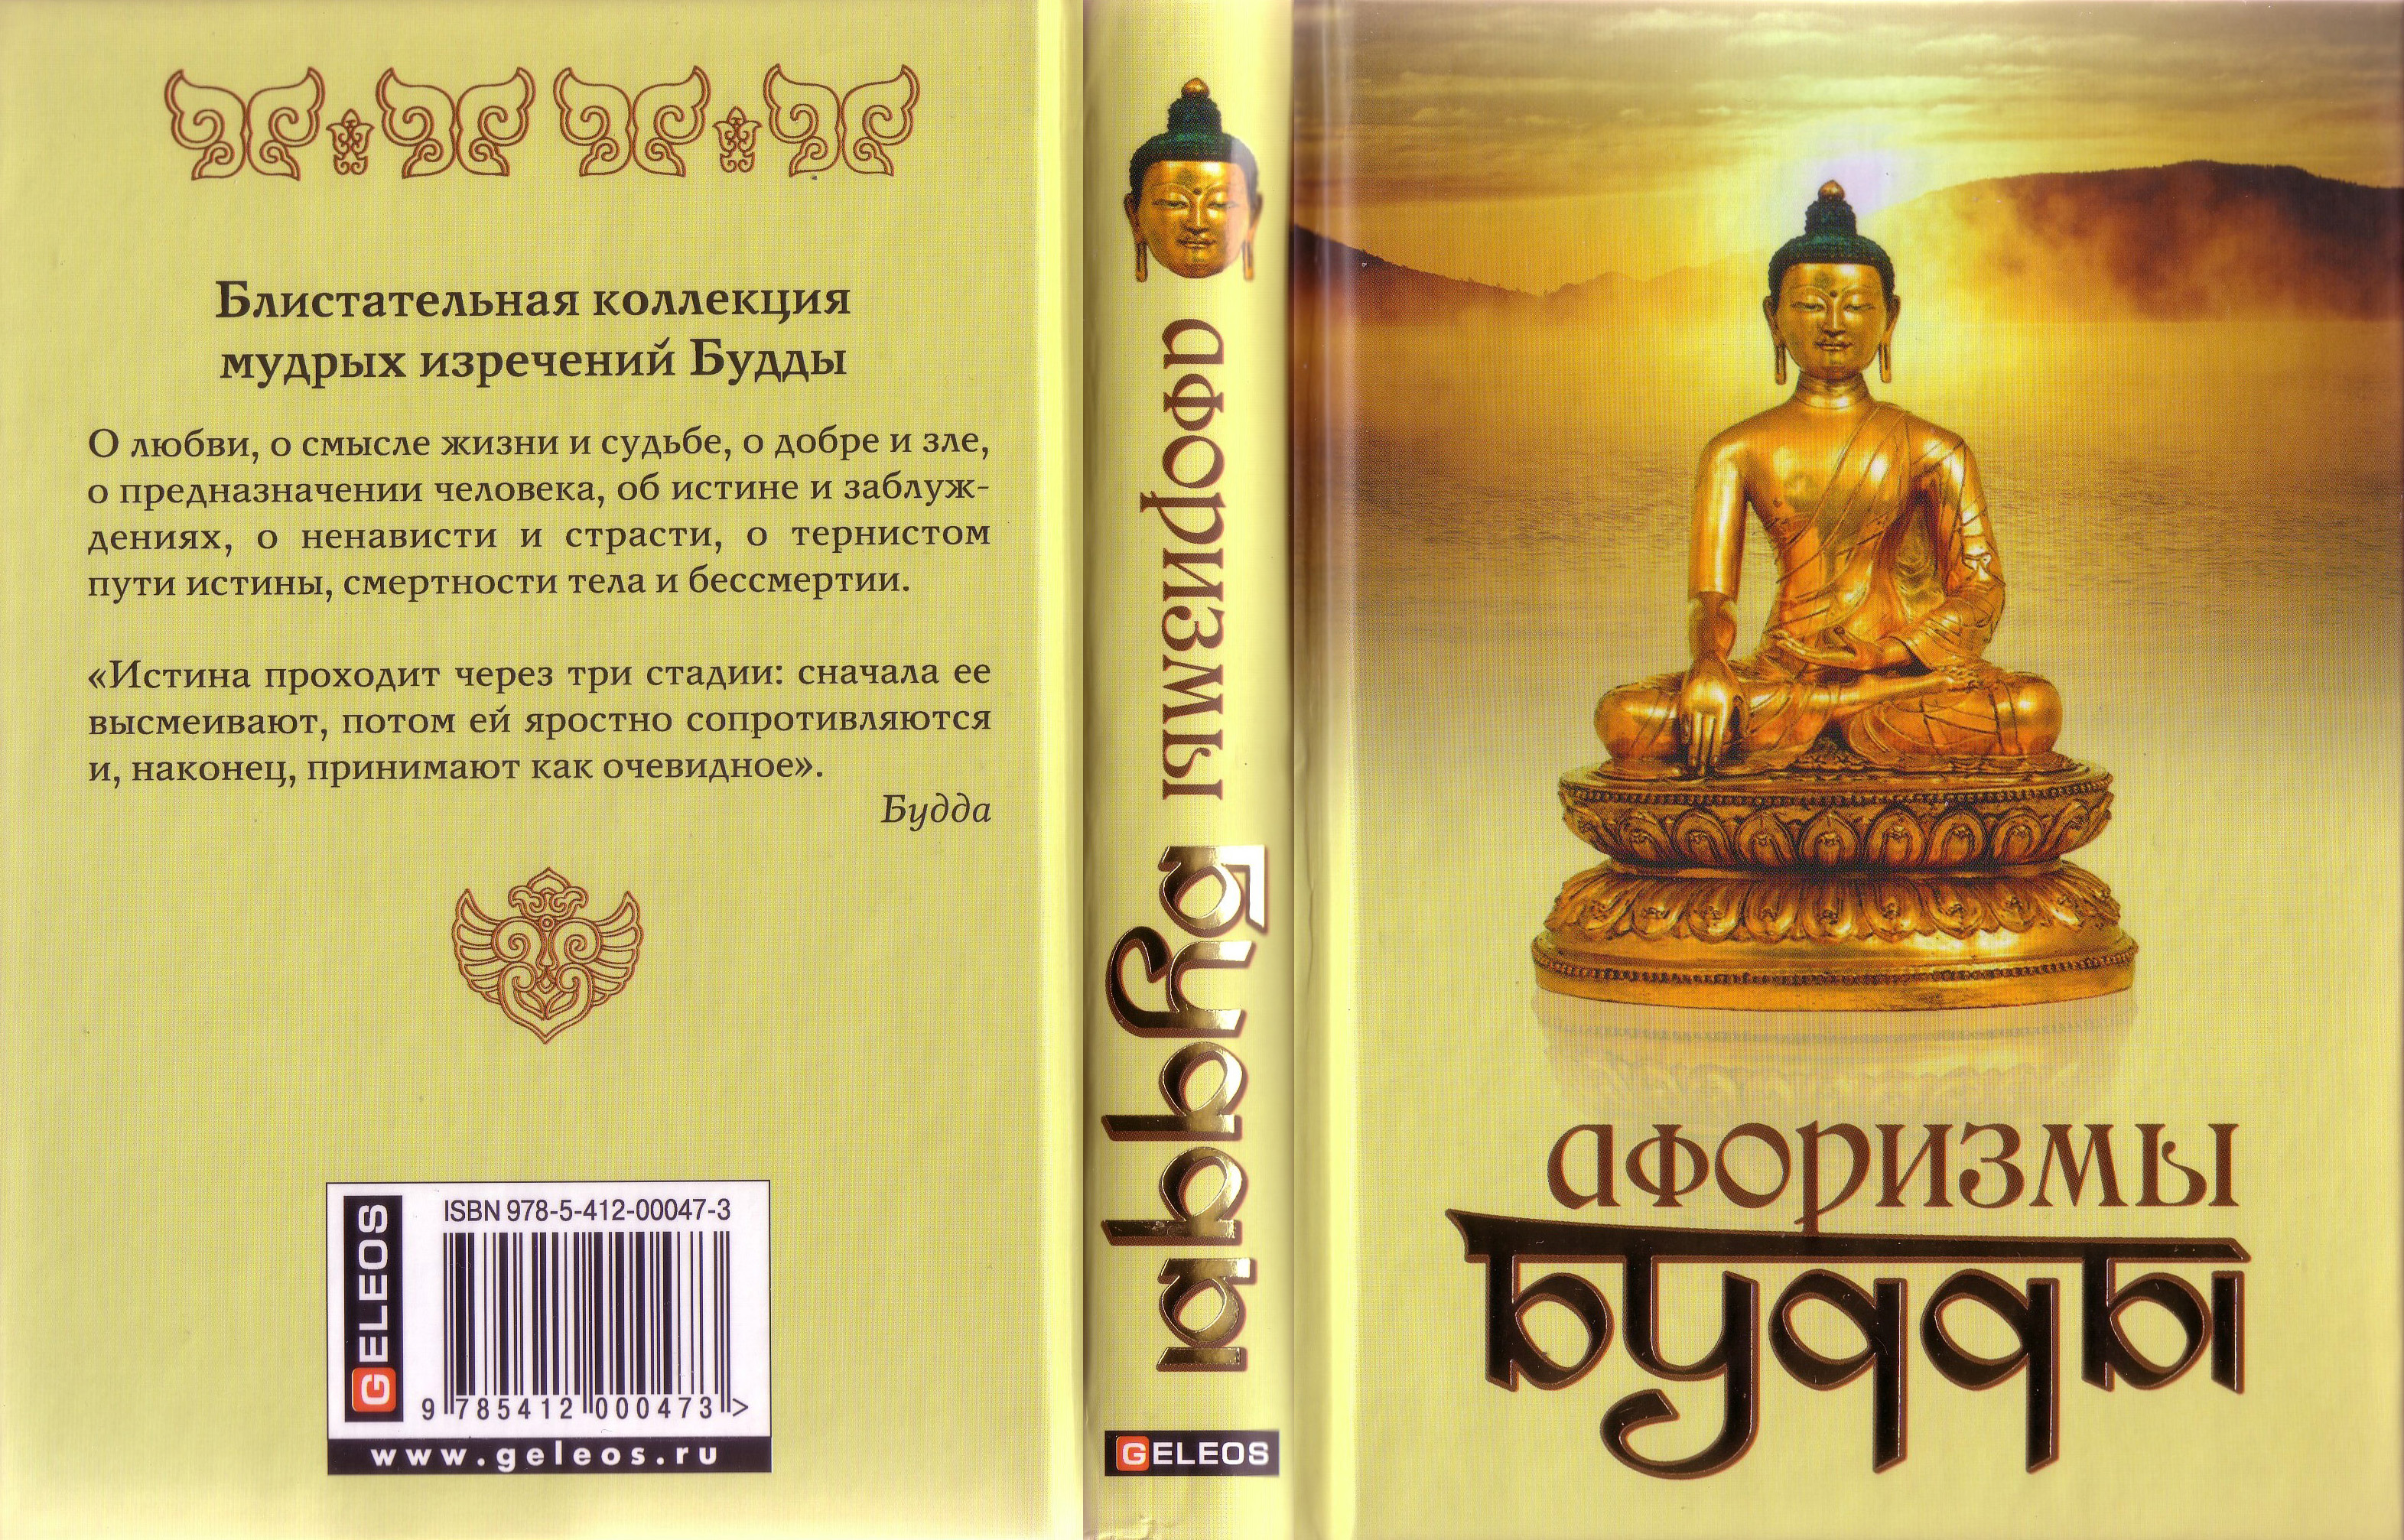 Код на будду. Будда цитаты. Афоризмы буддизма. Афоризмы Будды. Буддийские высказывания.